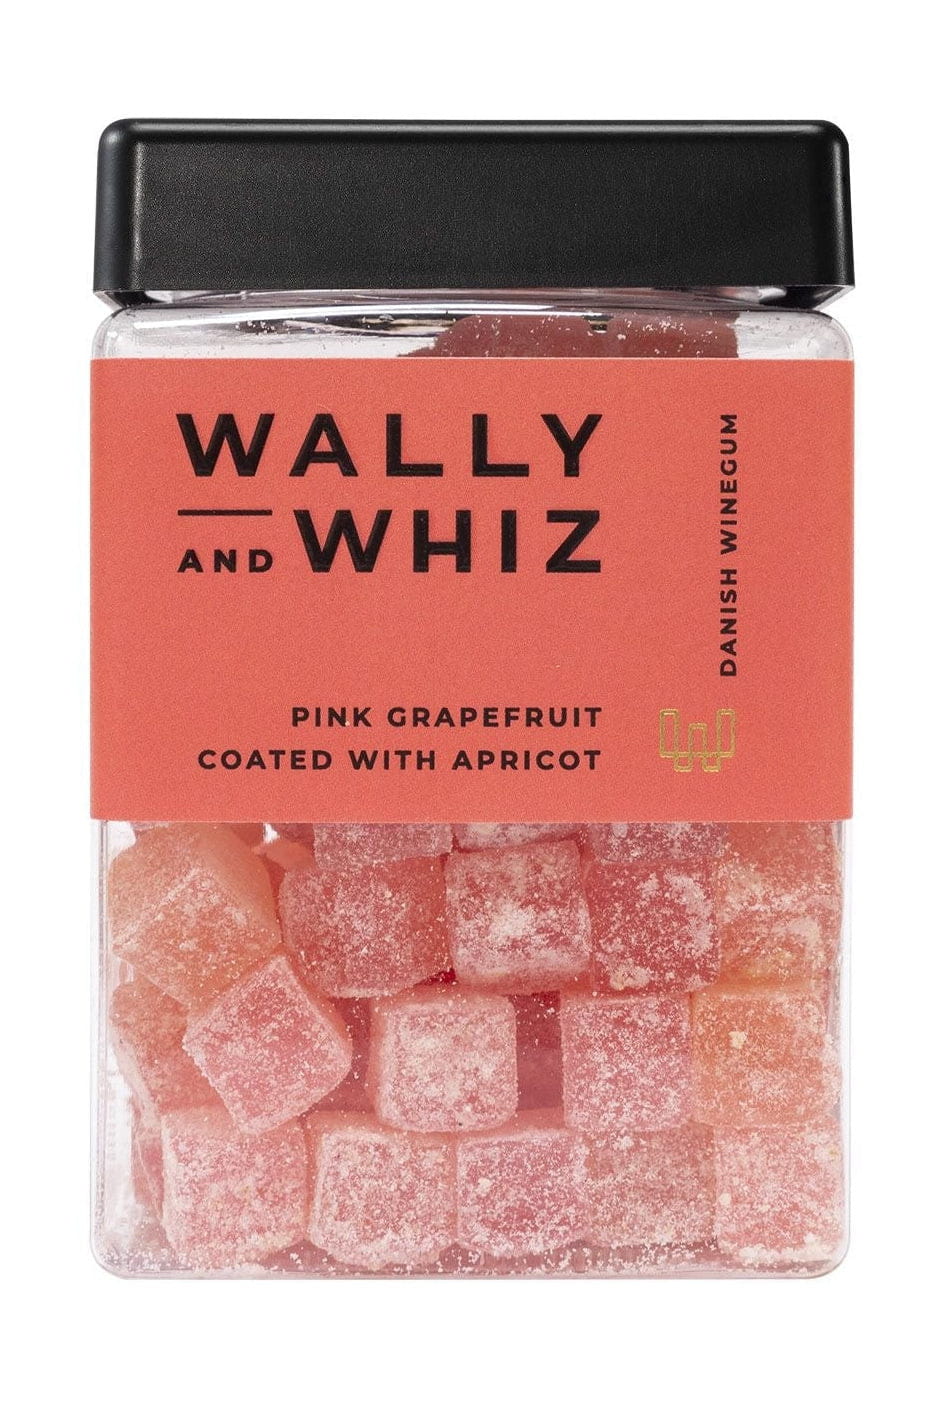 Wally og Whiz Wine Gum Cube, bleikur greipaldin með apríkósum, 240g